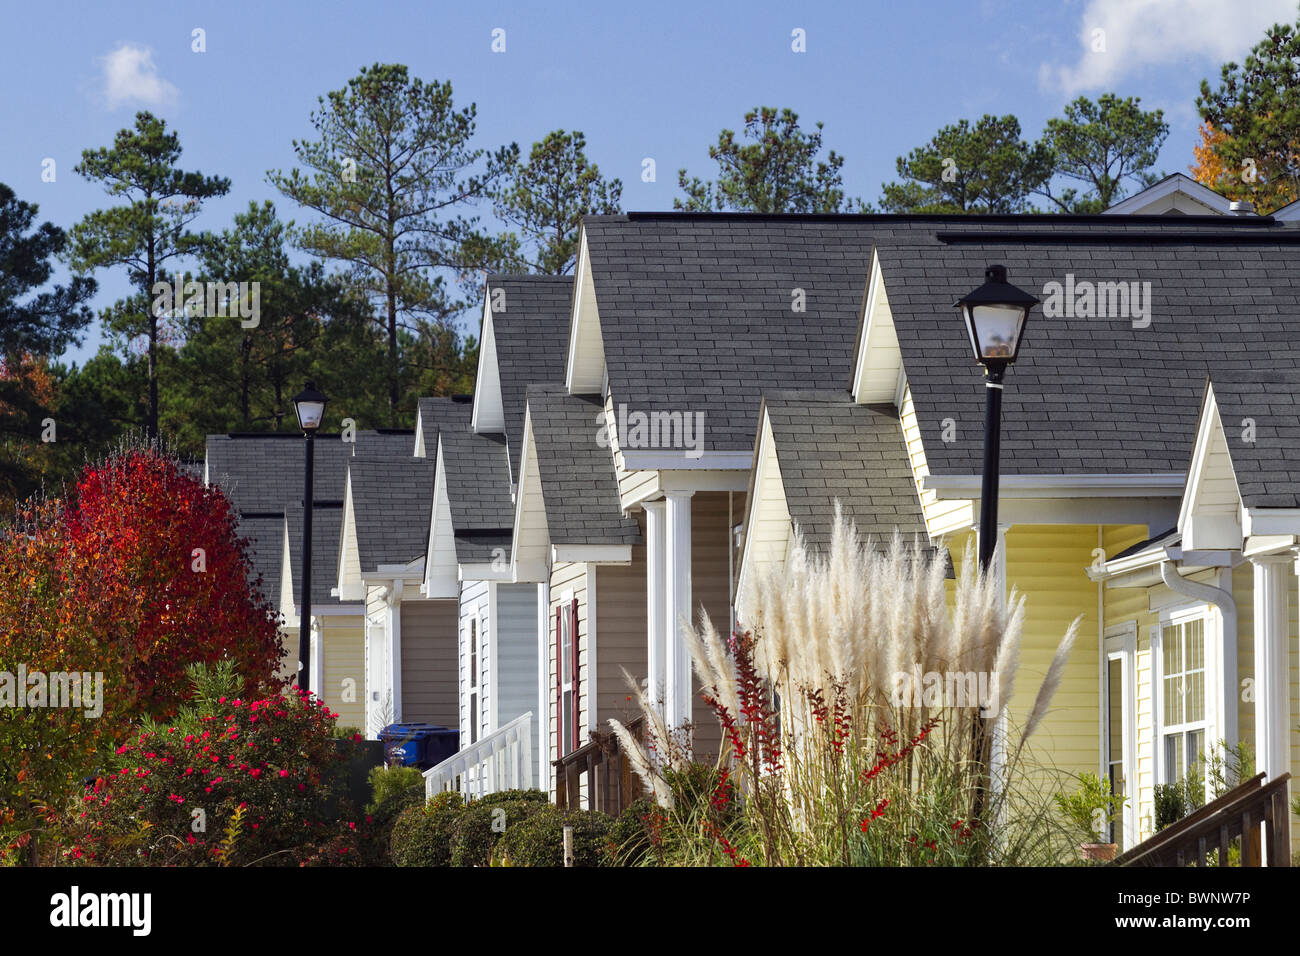 Typische Fassade einer Mittelschicht, Wohn Unterteilung der Häuser, die nah beieinander gebaut sind. Farben des Herbstes in South Carolina. Stockfoto